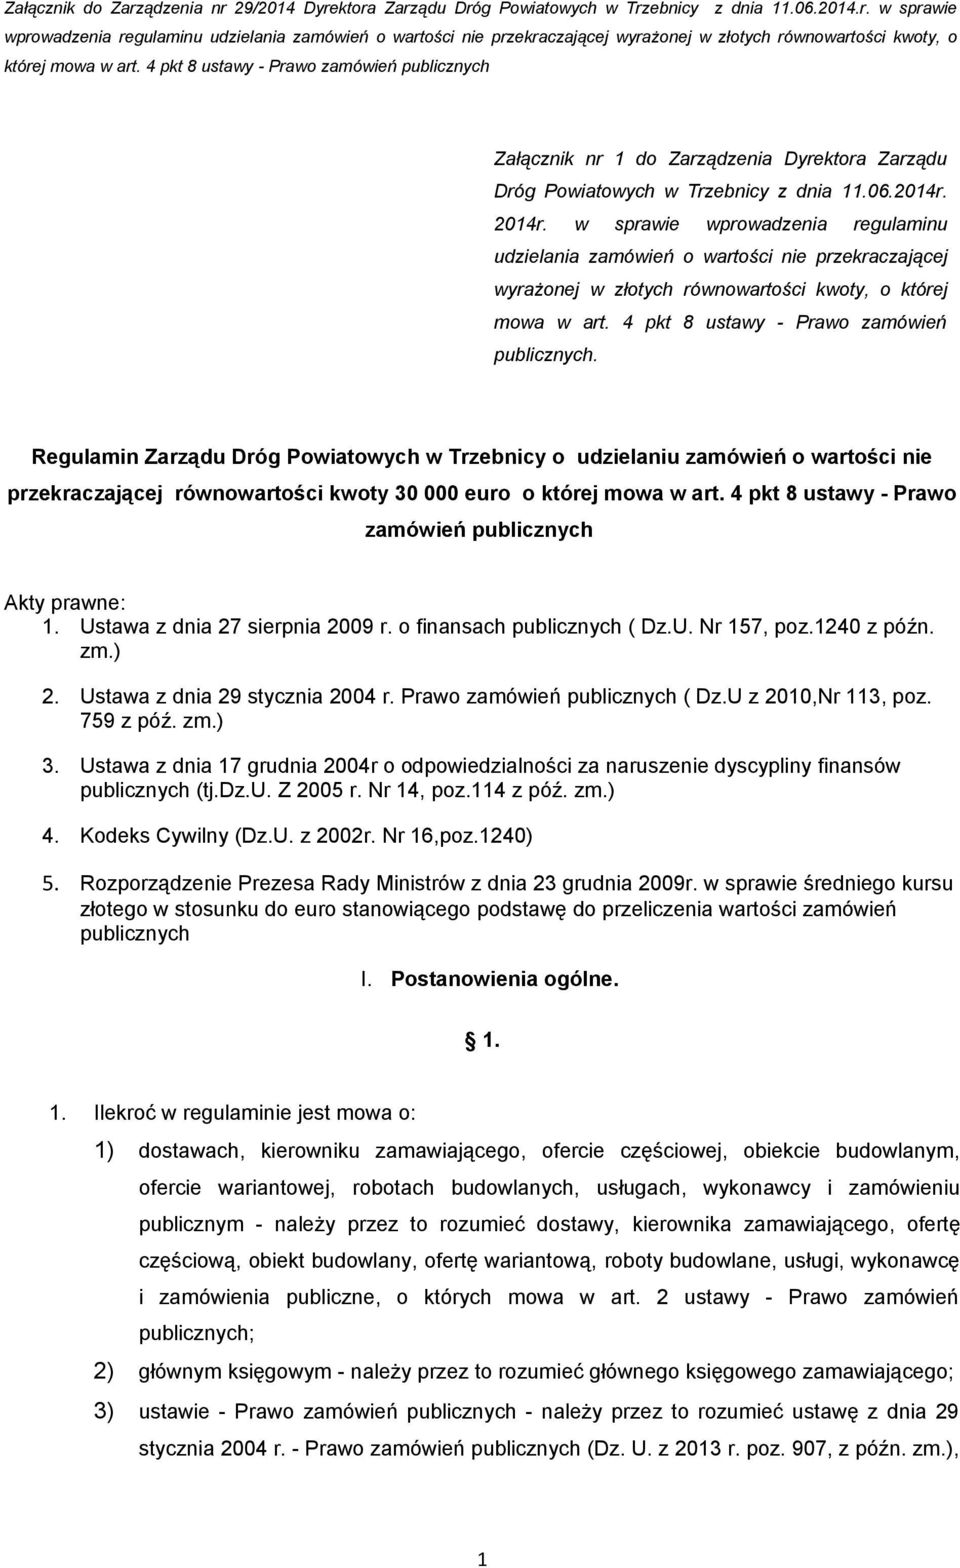 Regulamin Zarządu Dróg Powiatowych w Trzebnicy o udzielaniu zamówień o wartości nie przekraczającej równowartości kwoty 30 000 euro o której mowa w art.